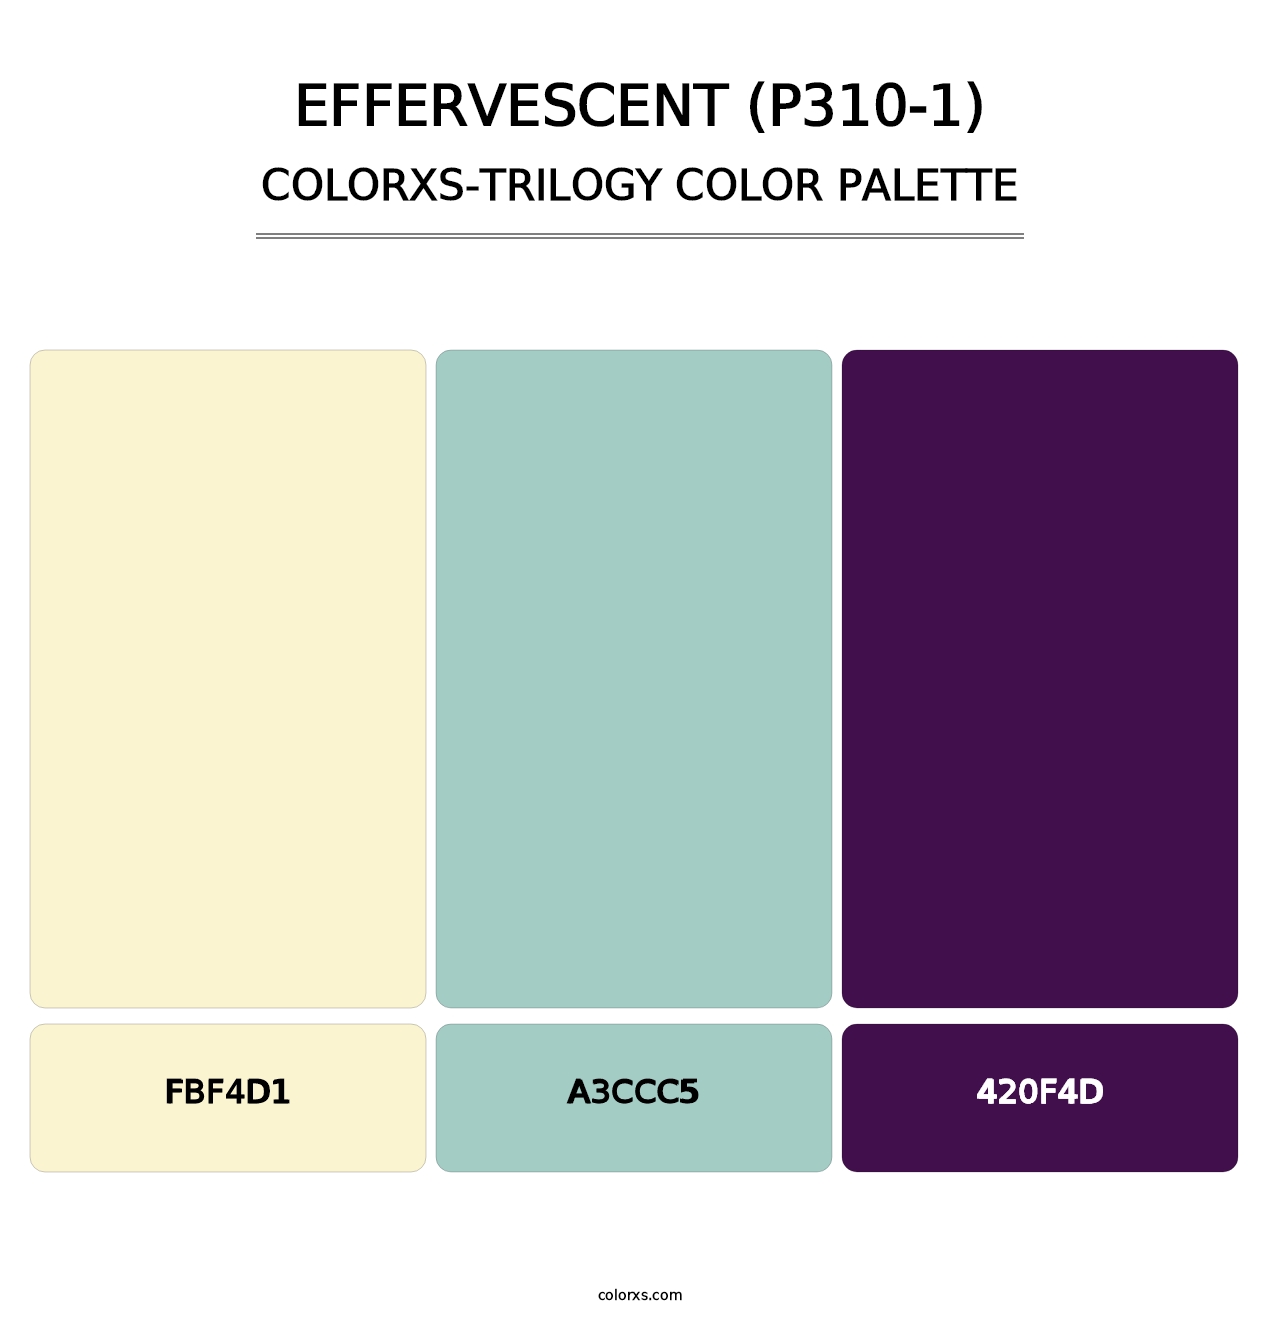 Effervescent (P310-1) - Colorxs Trilogy Palette